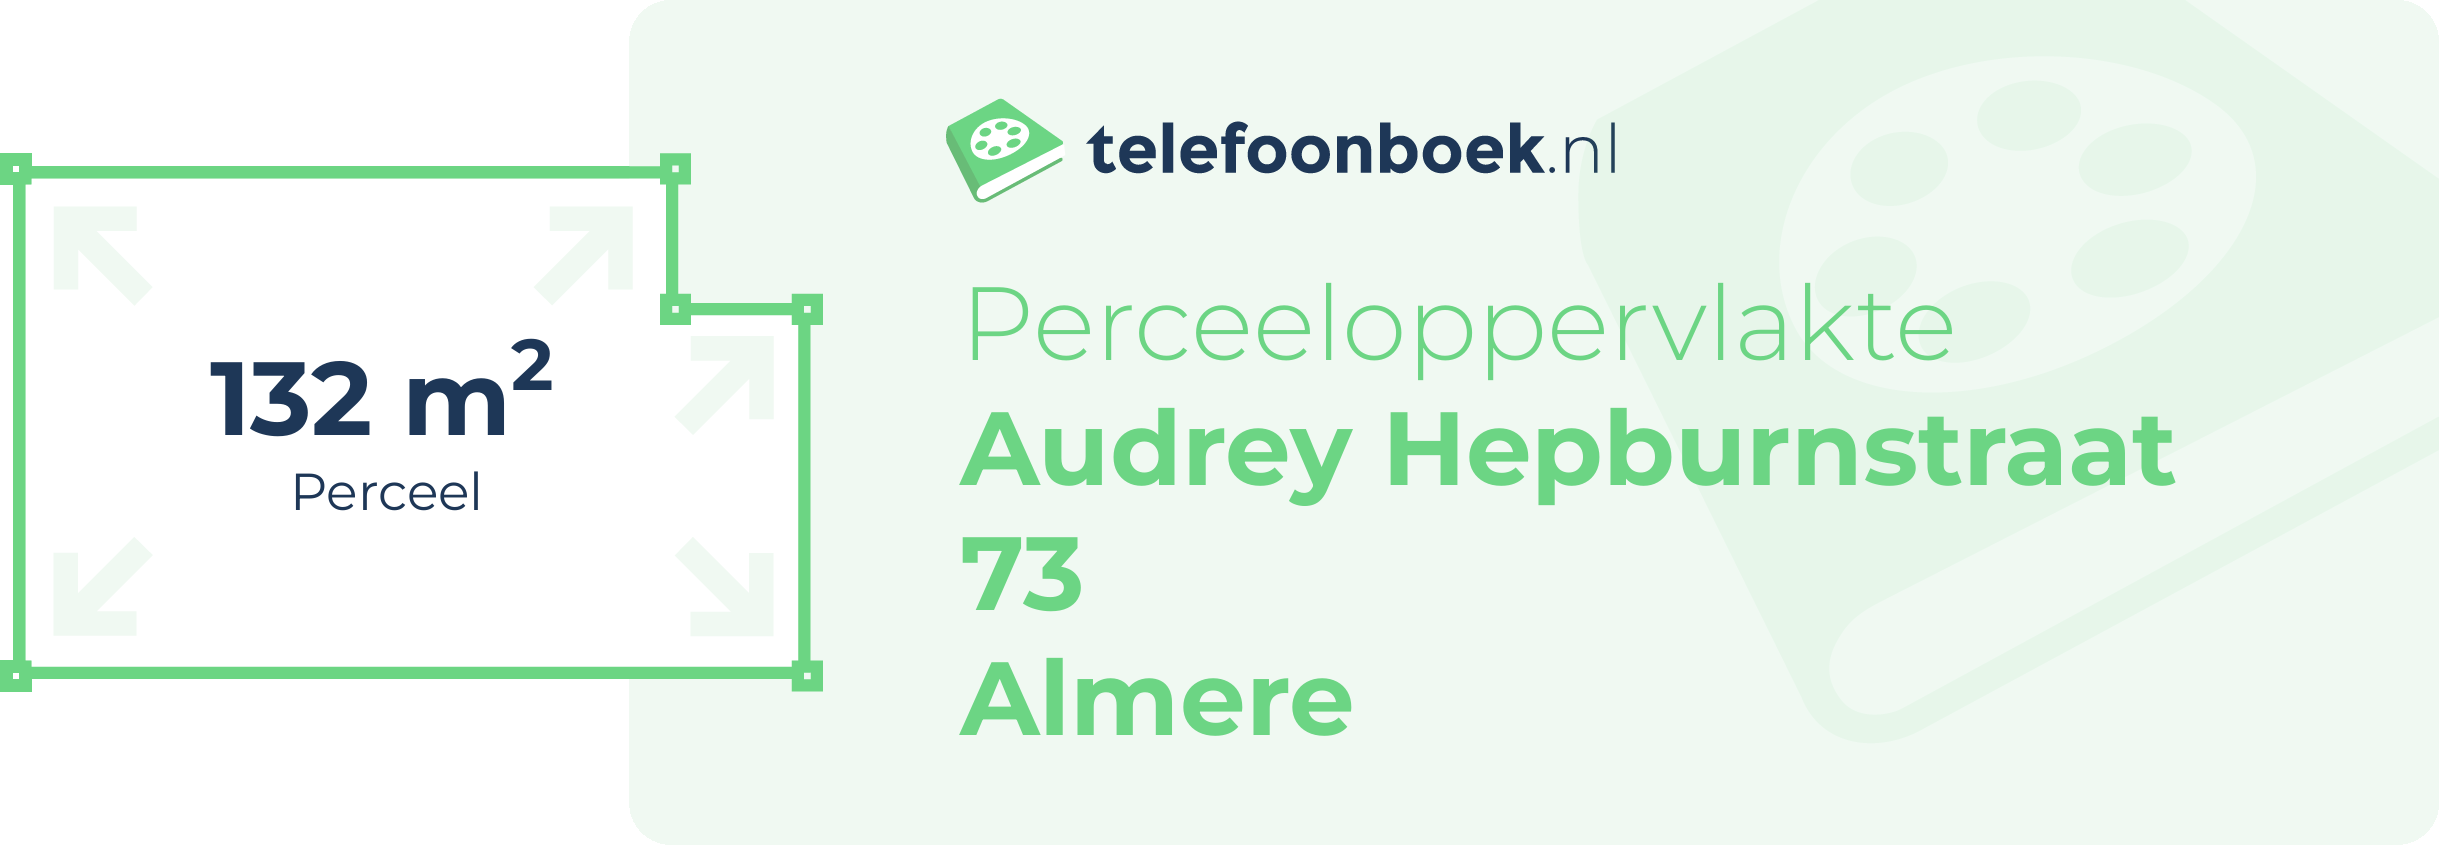 Perceeloppervlakte Audrey Hepburnstraat 73 Almere